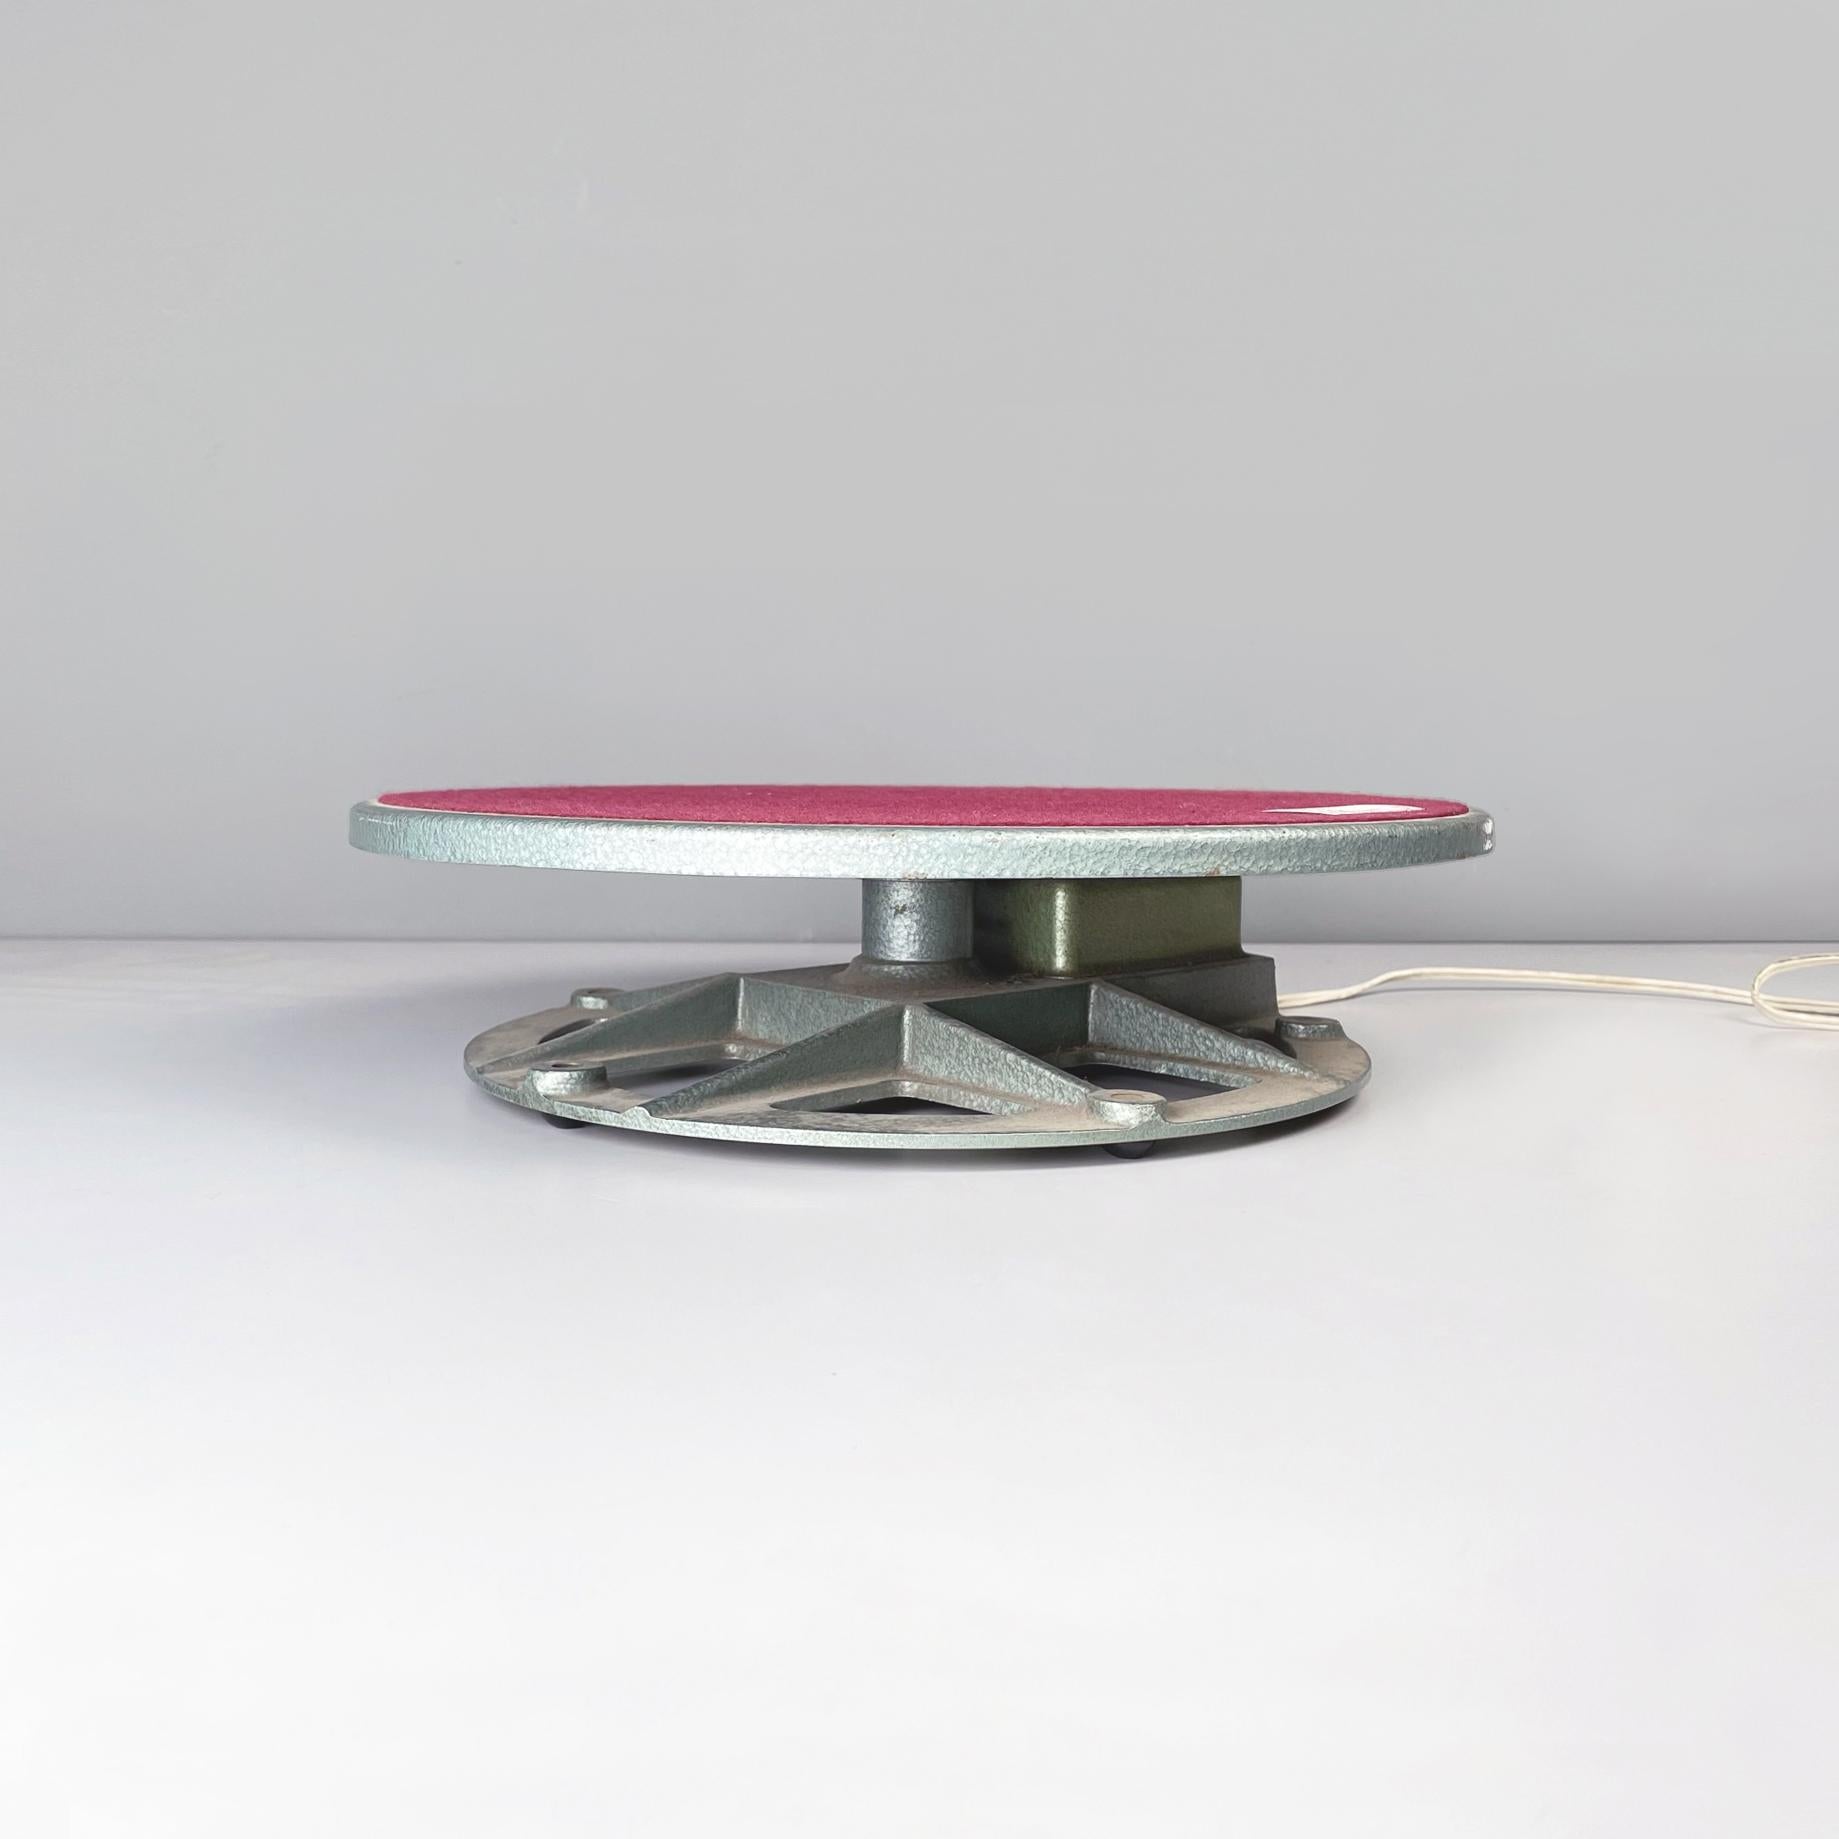 Présentoir rotatif moderne italien en métal et tissu rouge, années 1970
Présentoir de table rotatif en métal et tissu rouge. L'étagère ronde a une structure métallique avec un tissu rouge bordeaux au centre. La structure est dotée d'un mécanisme